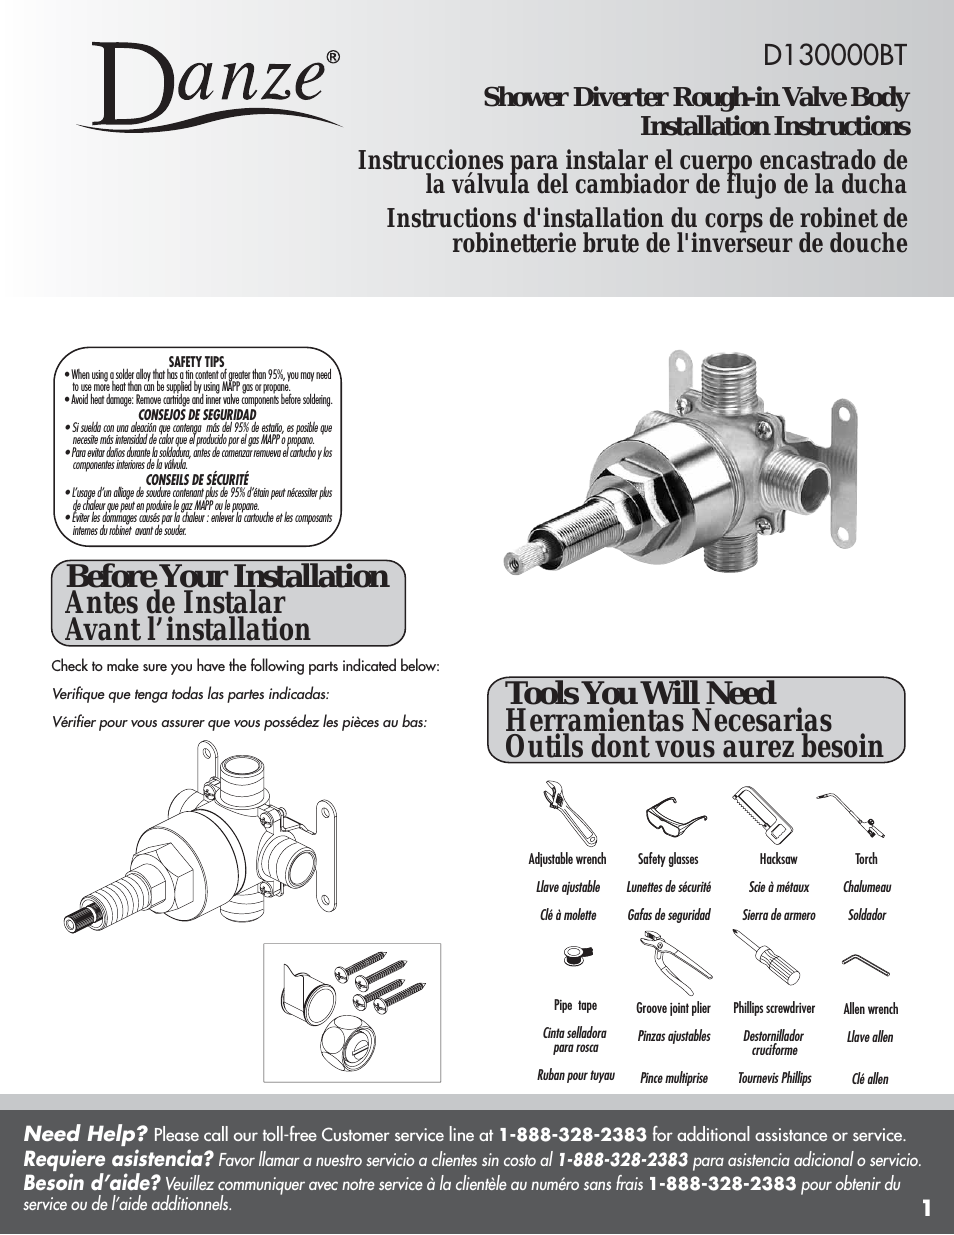 D130000BT - Installation Manual